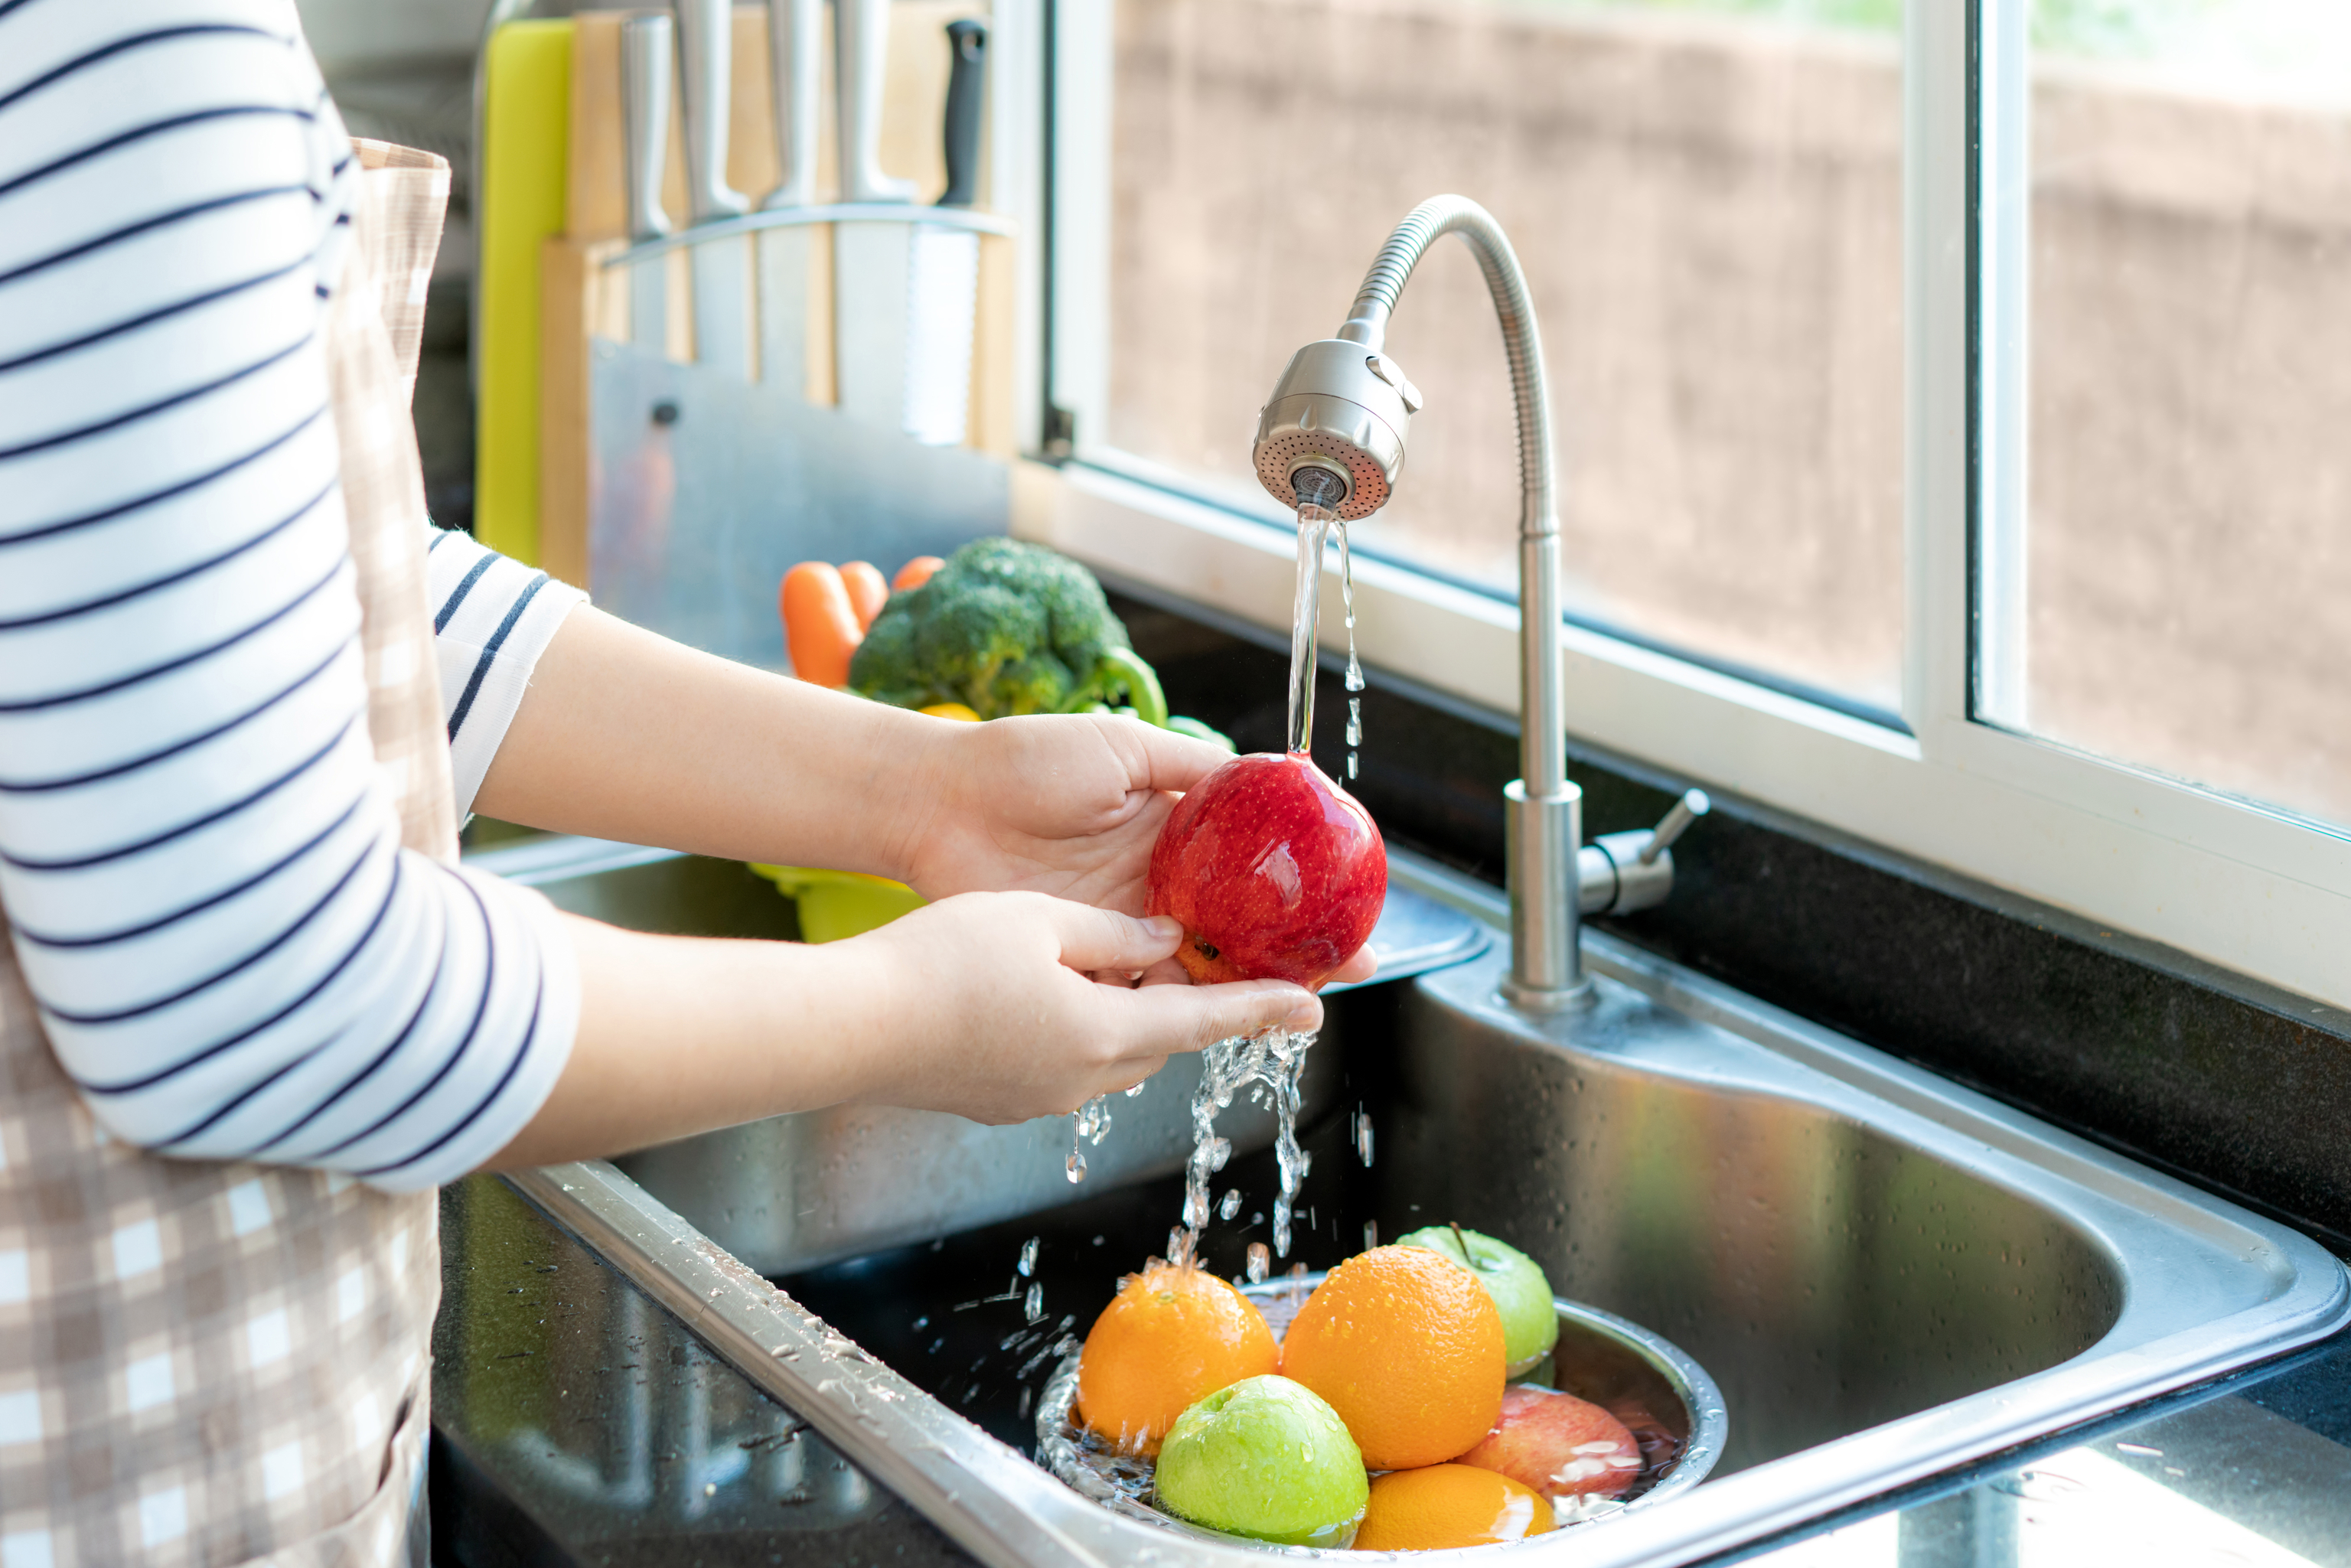 🍐¿Lavas tus frutas y verduras? Es importante limpiar bien algunas frutas  que llegan sucias a nuestras casas. Te recomendamos usar nuestra lejía  Chef, By La Salud